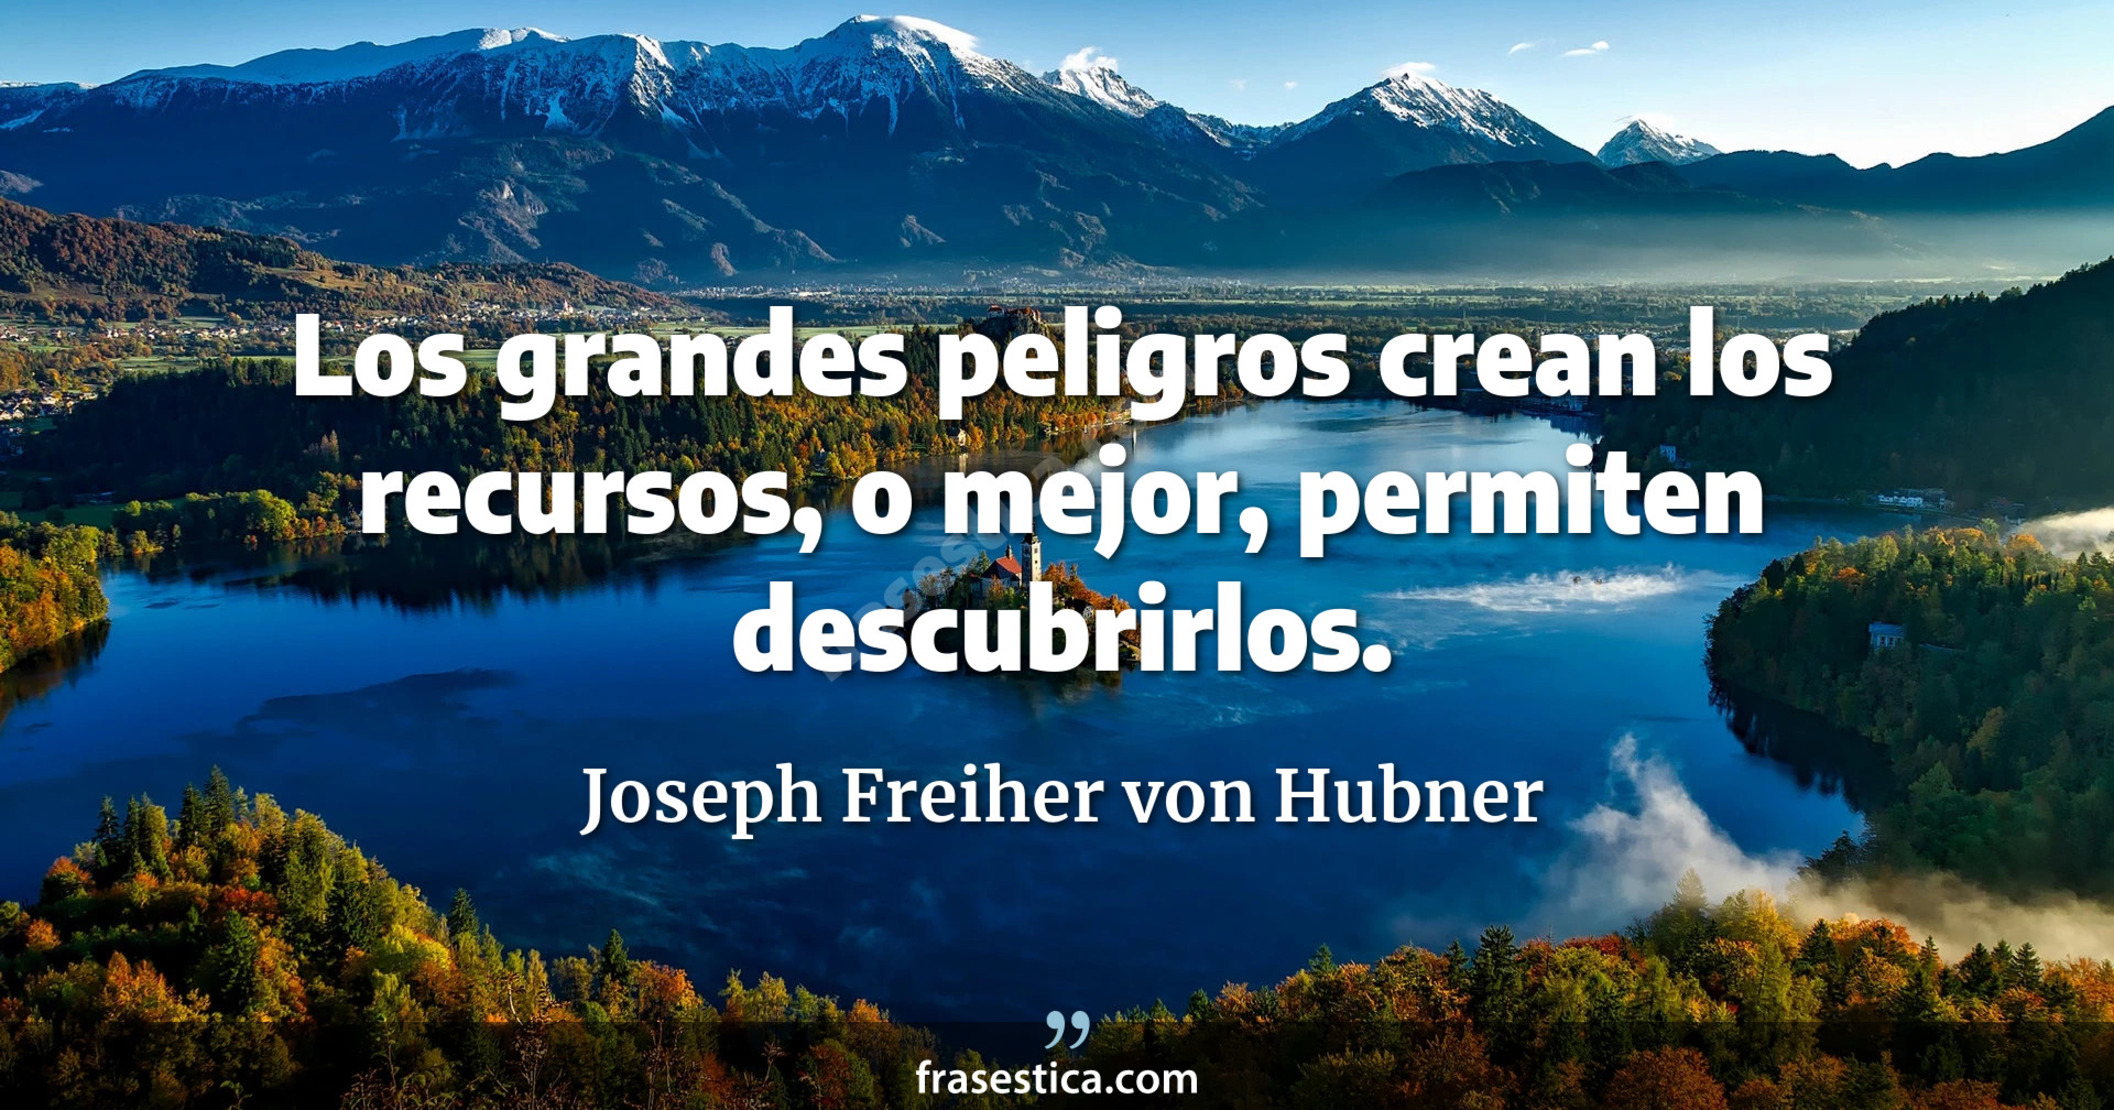 Los grandes peligros crean los recursos, o mejor, permiten descubrirlos. - Joseph Freiher von Hubner